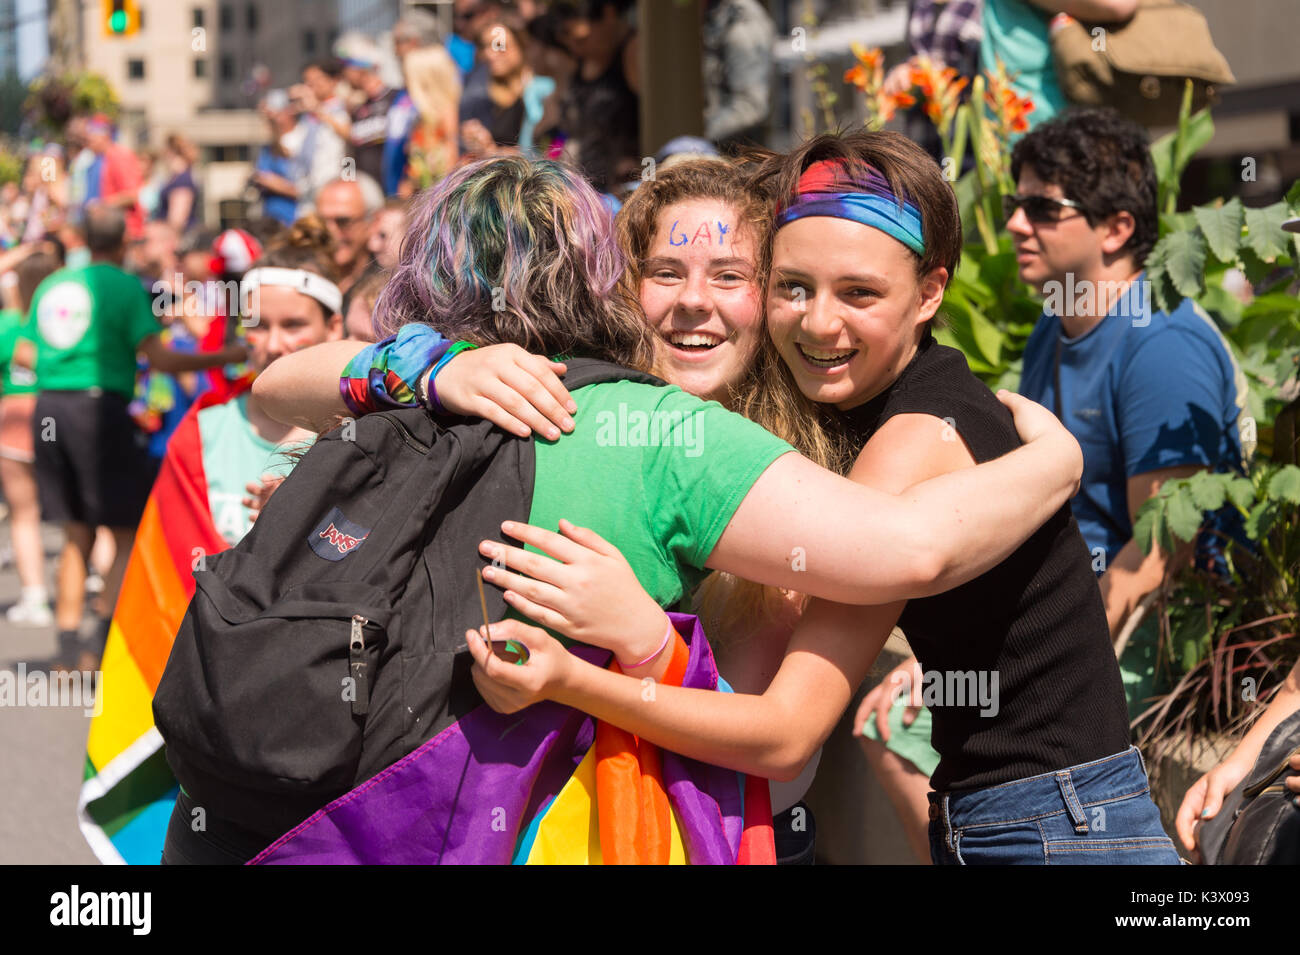 Montreal, Canadá - 20 de agosto de 2017: 3 personas abrazarse mutuamente en Montreal Desfile del Orgullo Gay Foto de stock